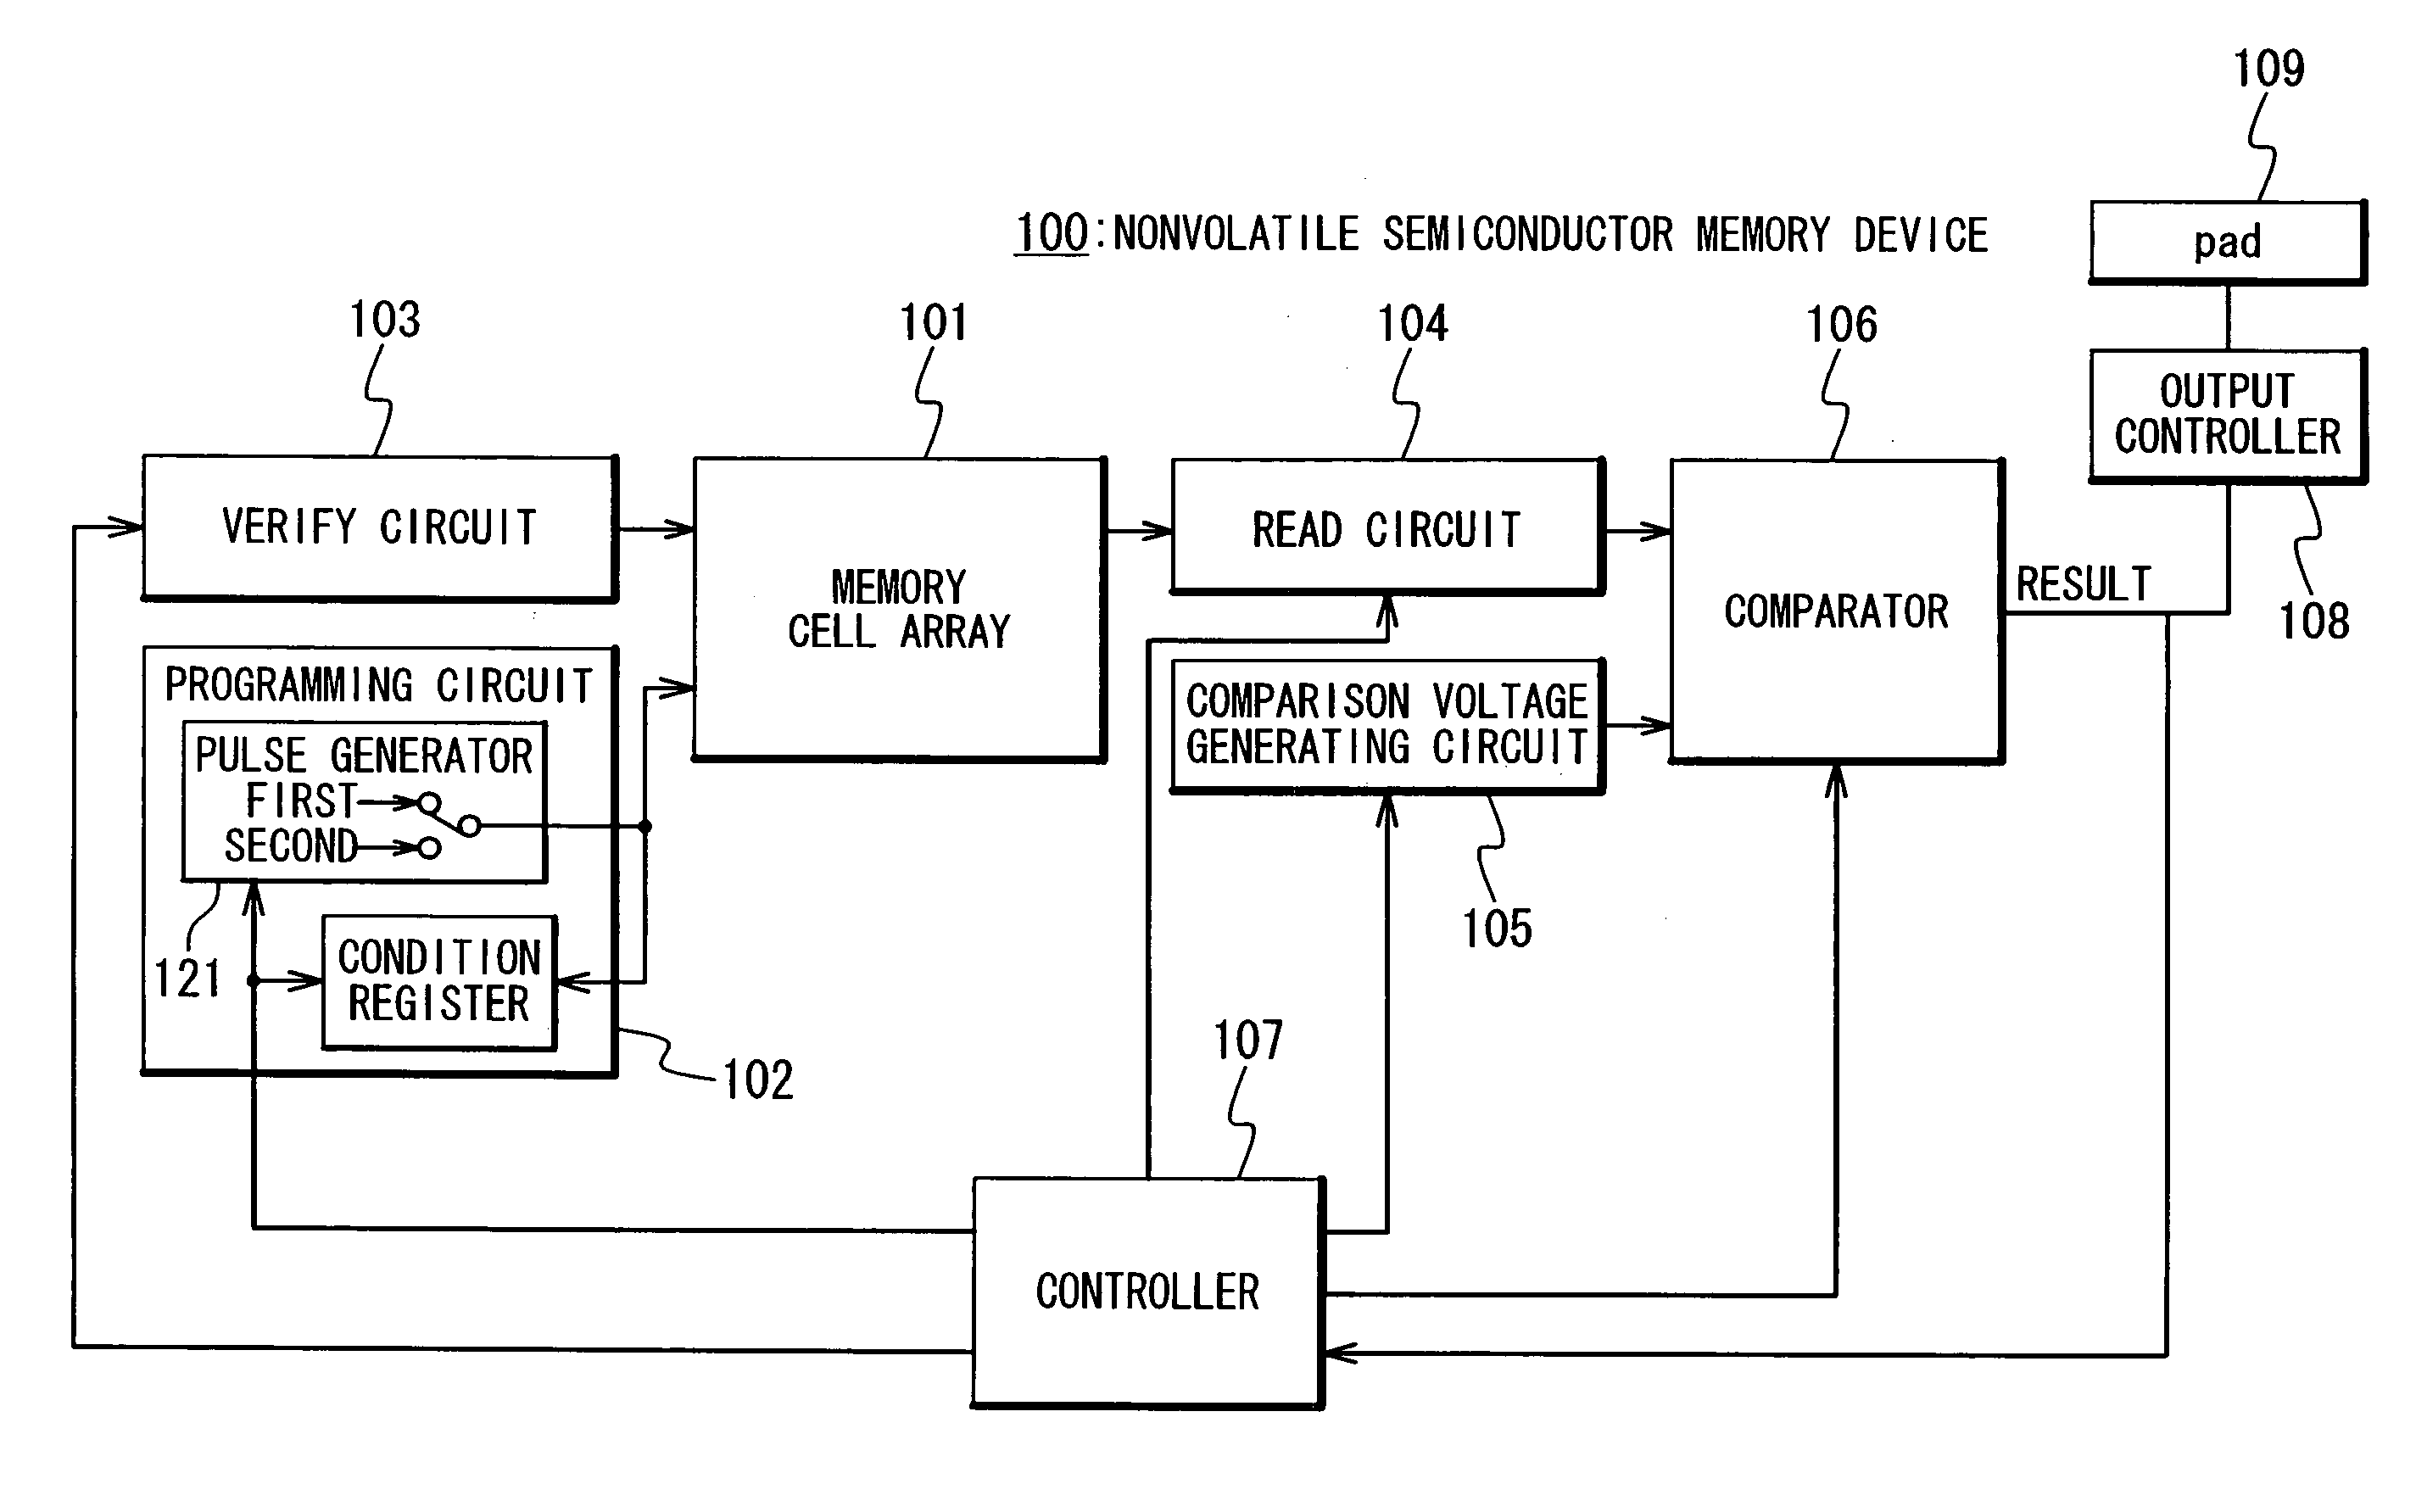 Nonvolatile semiconductor memory device and method of programming in nonvolatile semiconductor memory device